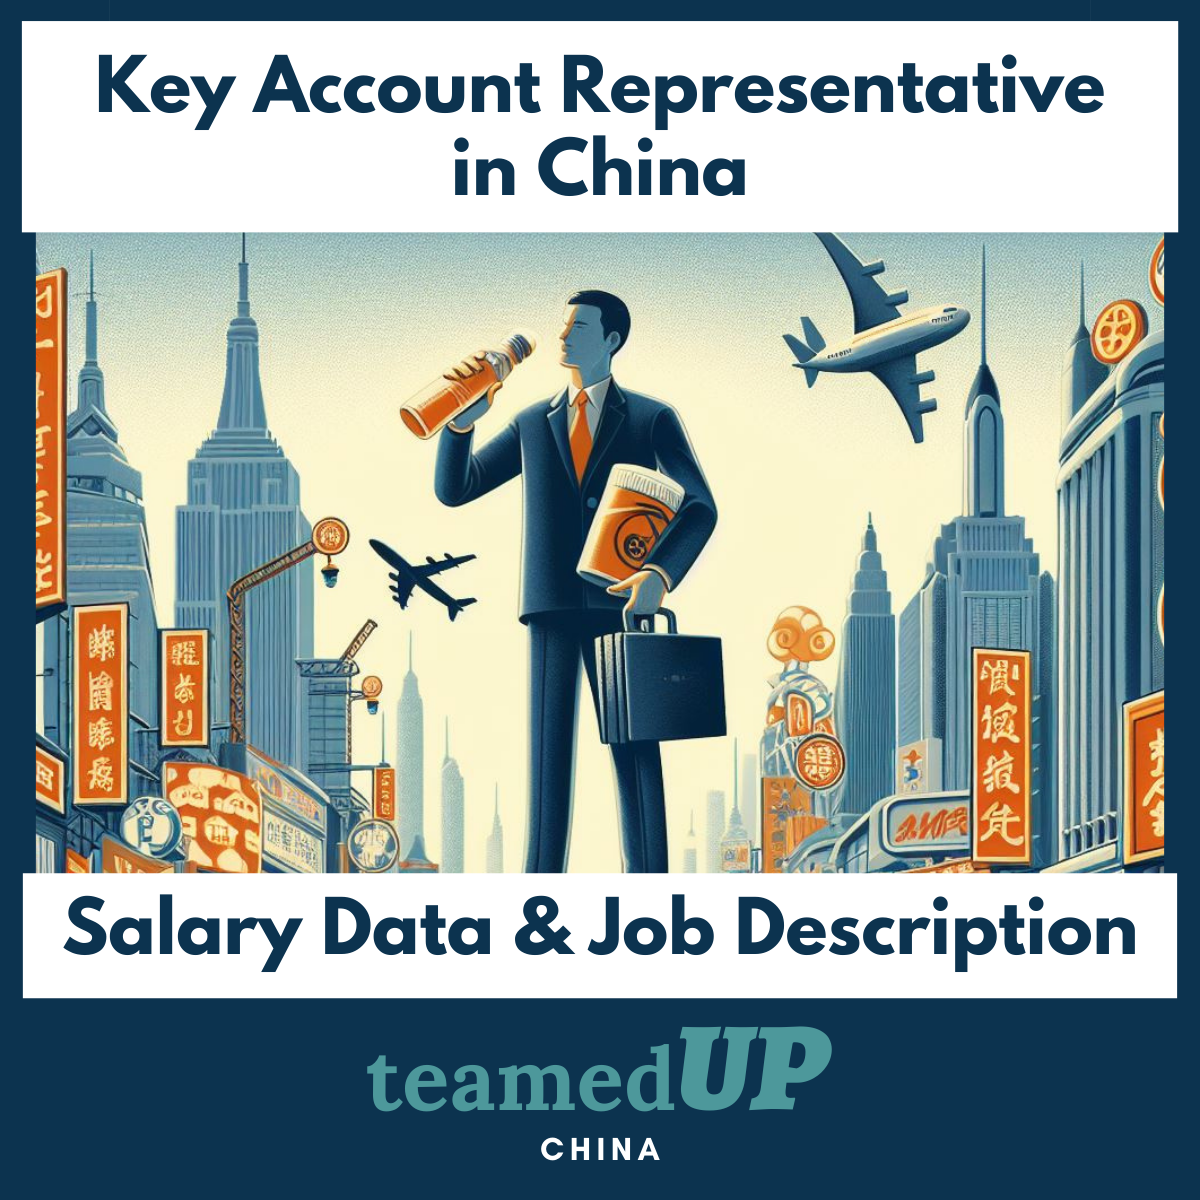 Key Account Reps in China: Average Salary and JD - TeamedUp China